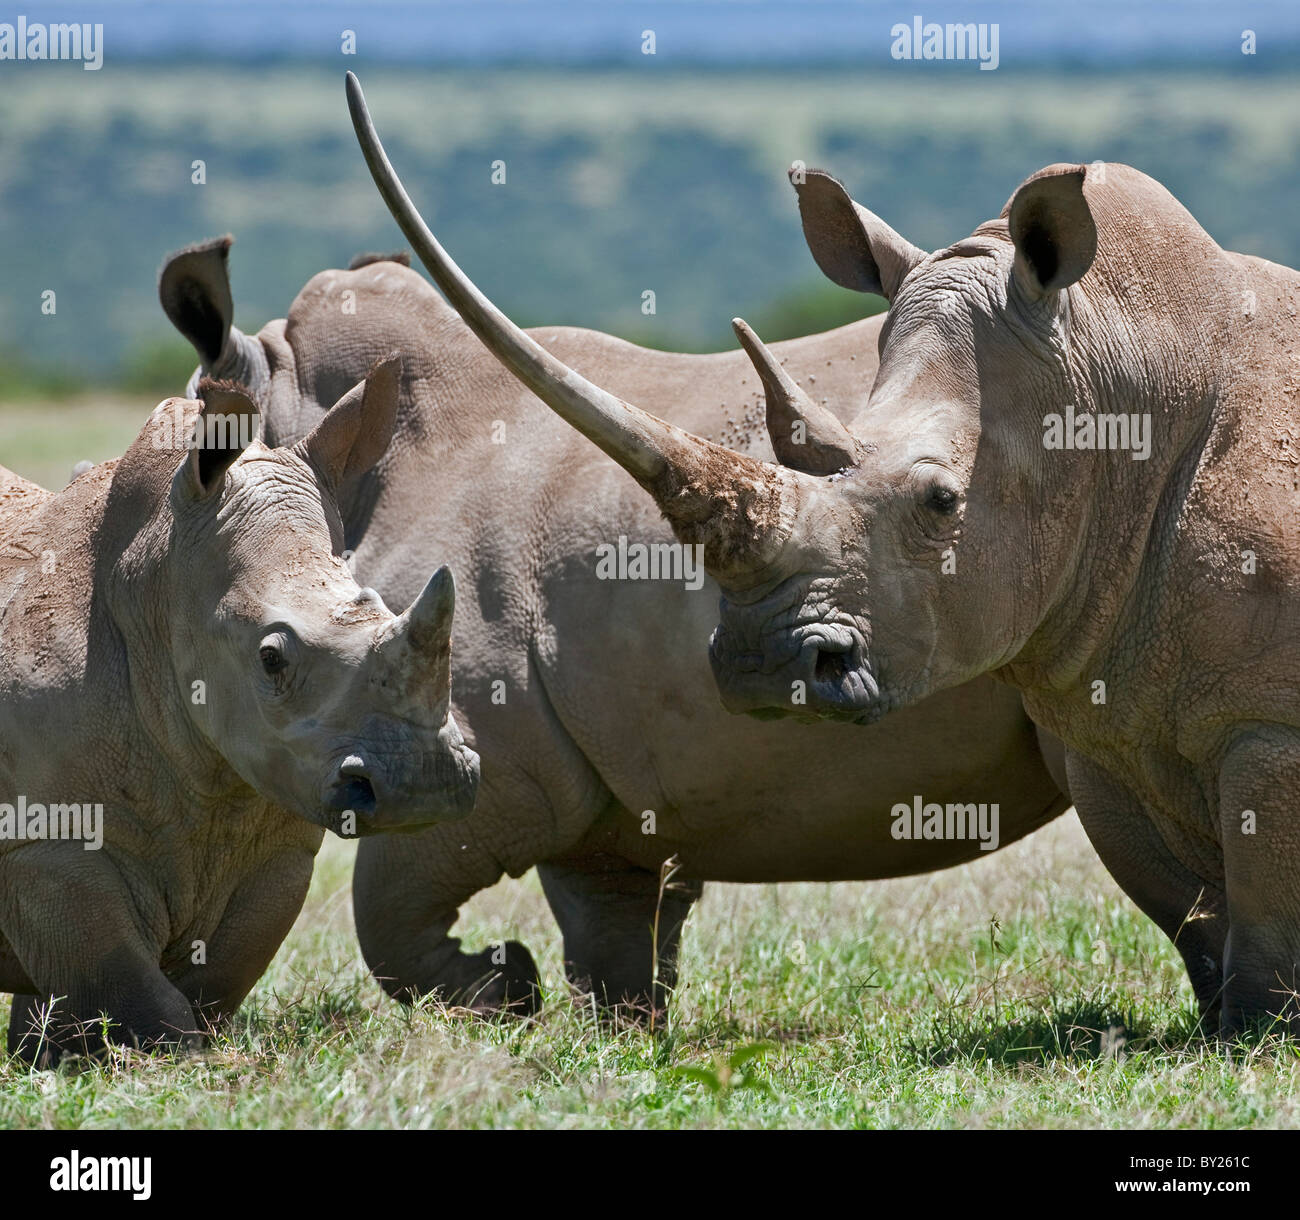 Eine Familie von weiße Rhinos, das Weibchen mit einem massiven Horn. Mweiga, Solio, Kenia Stockfoto